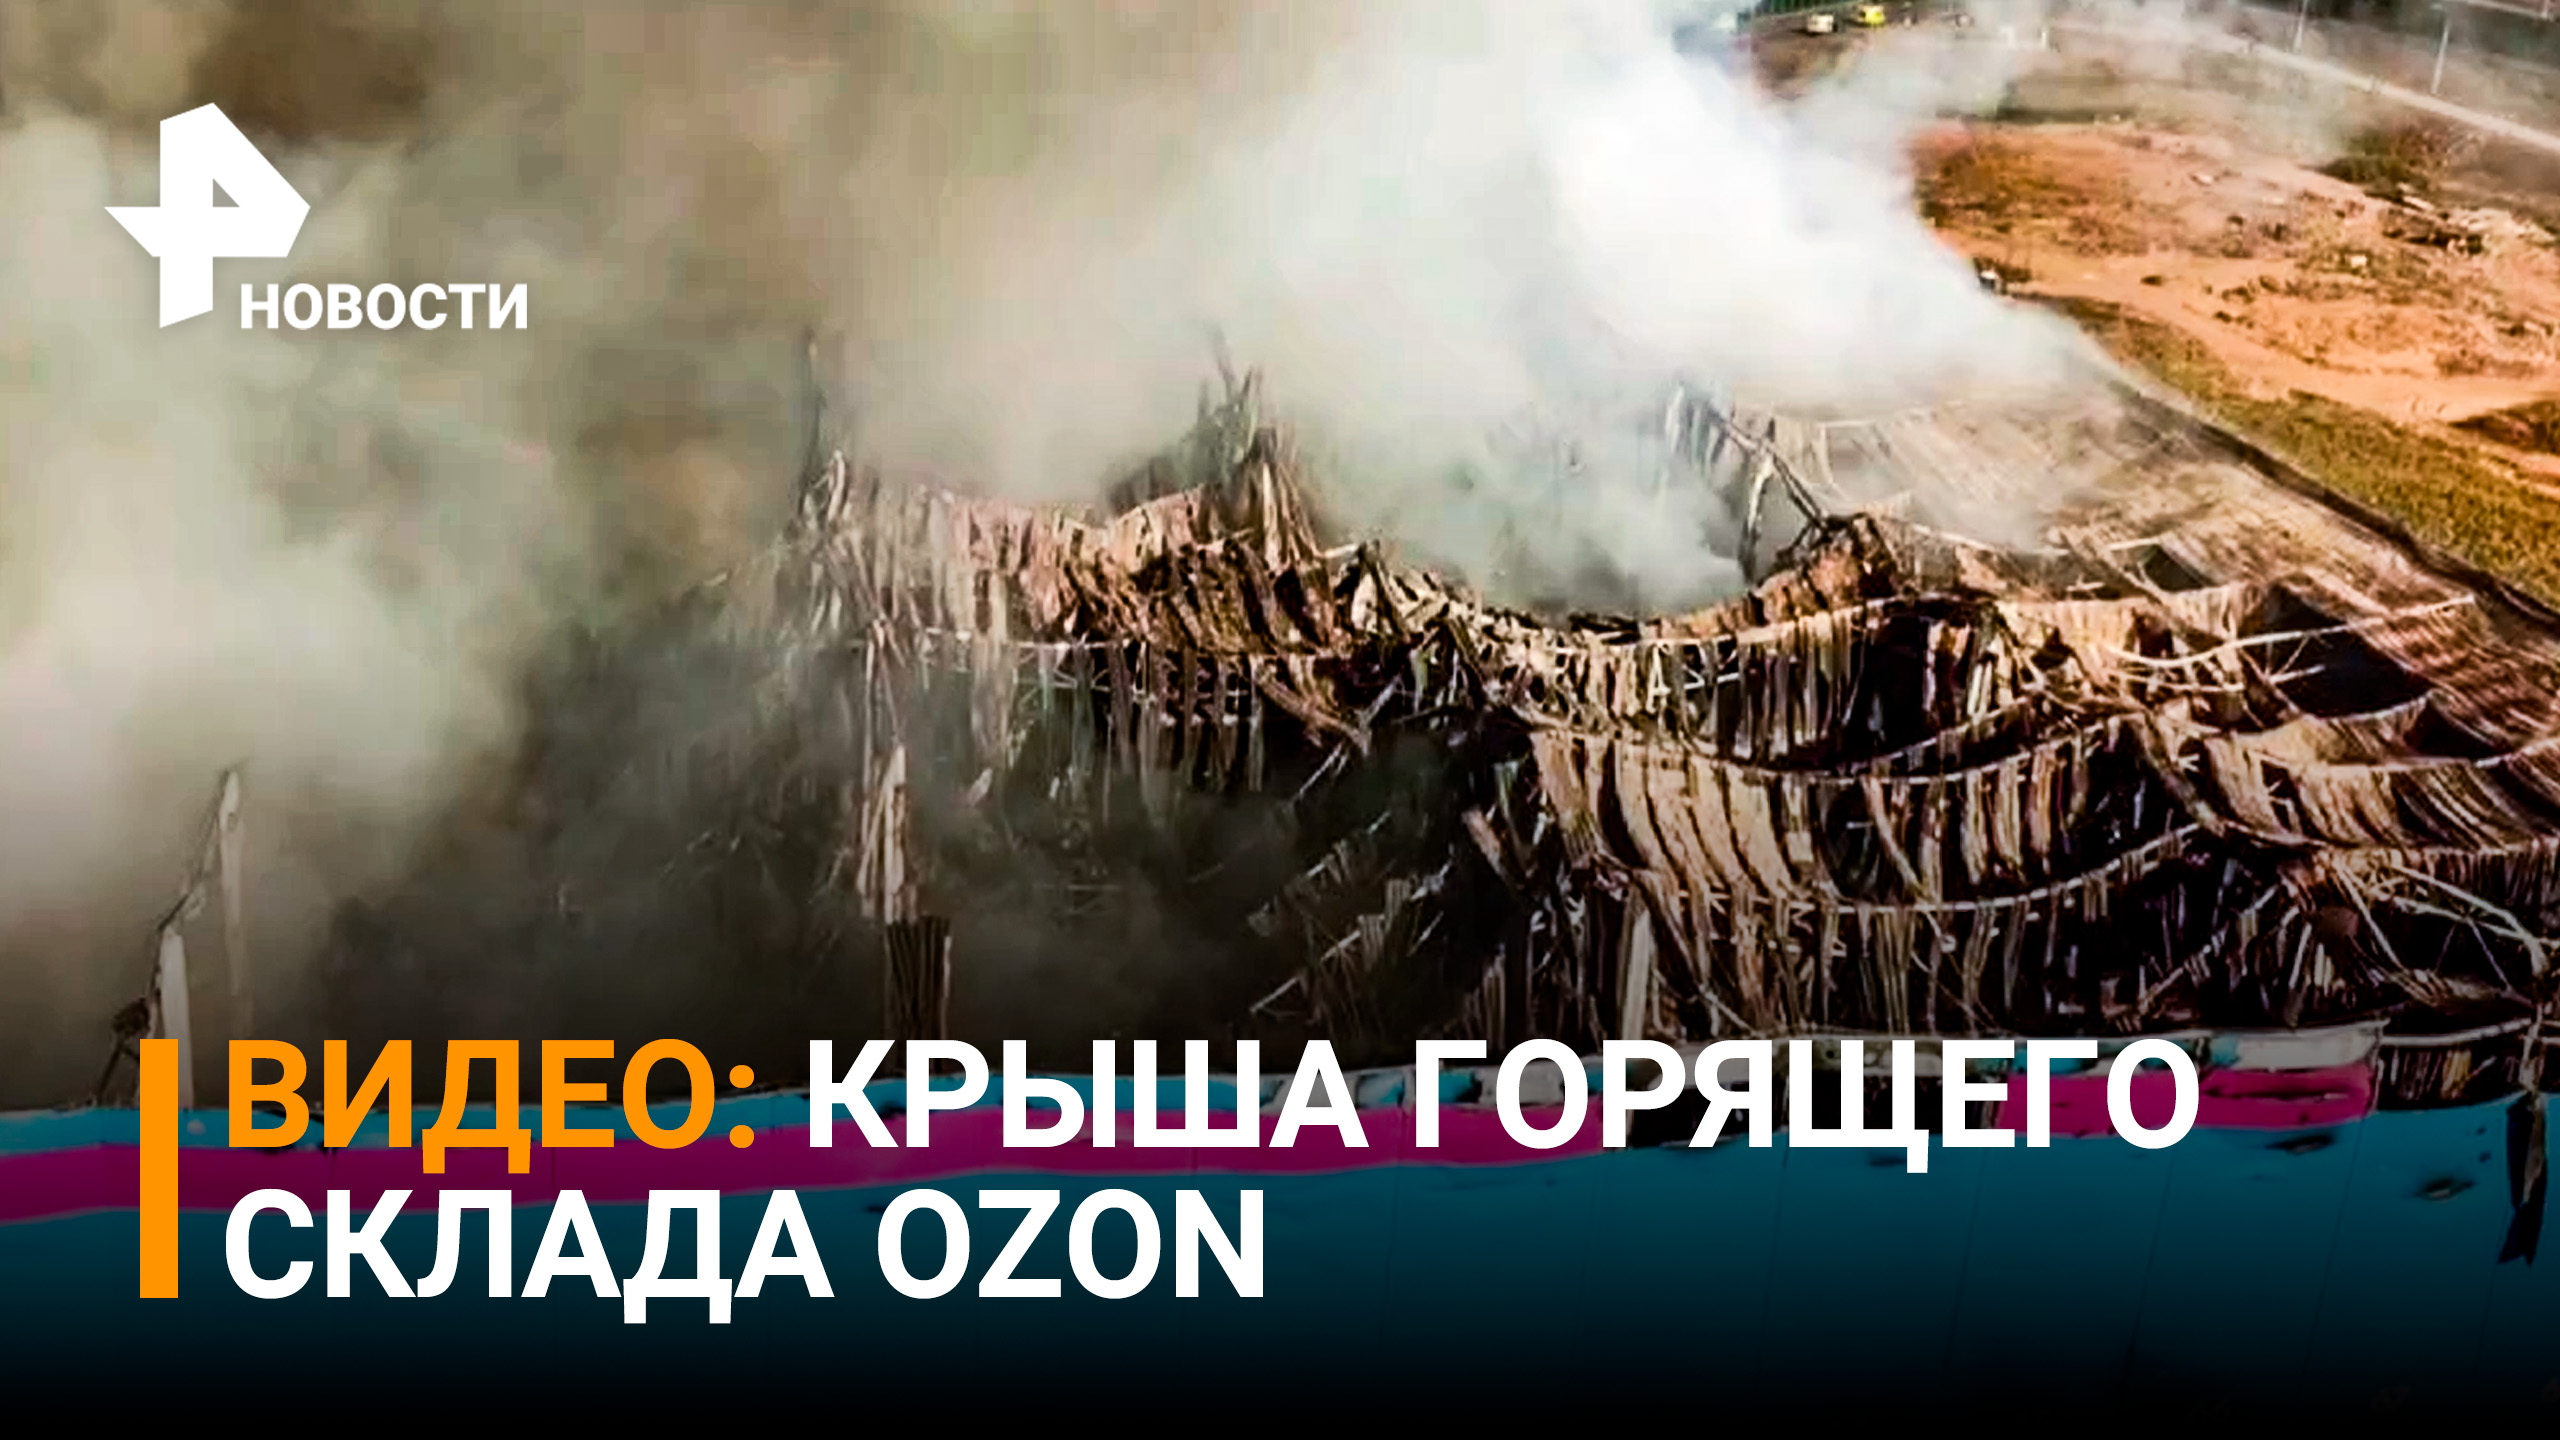 Жуткие кадры - горящий склад OZON в Истре спустя 5 часов. Видео с коптера / РЕН Новости